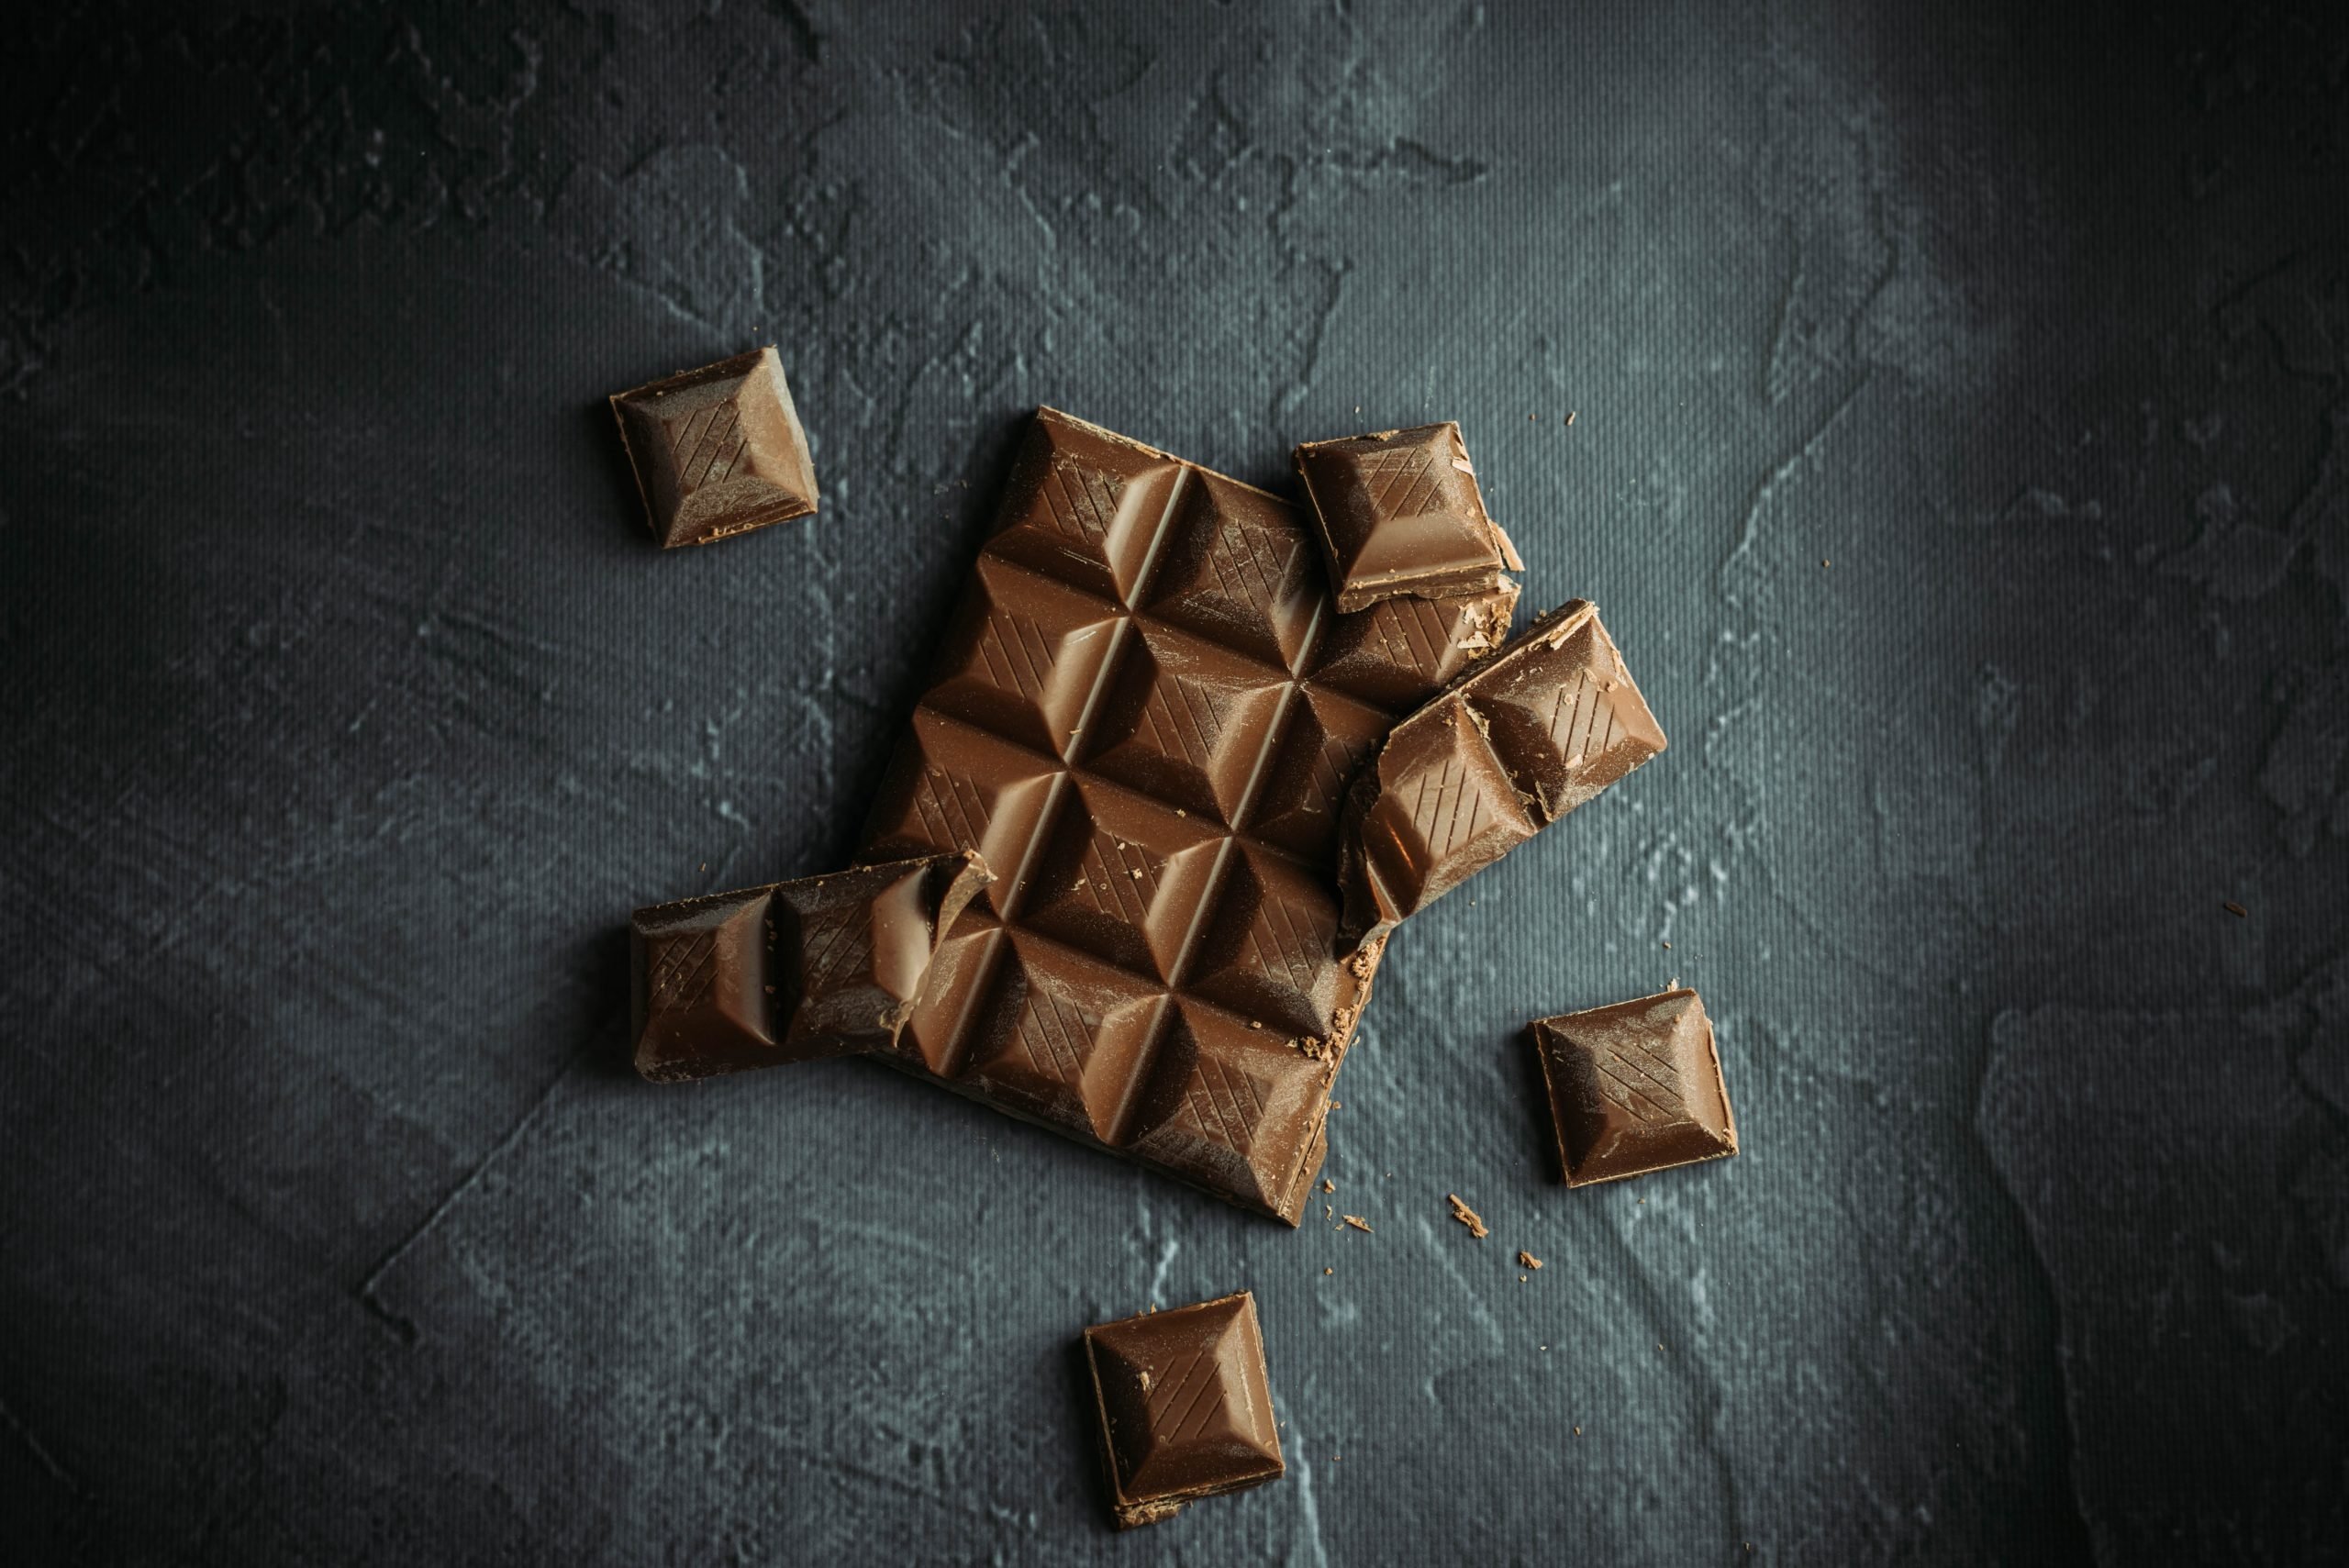 Η σοκολάτα έχει ένα όφελος – έκπληξη για την υγεία